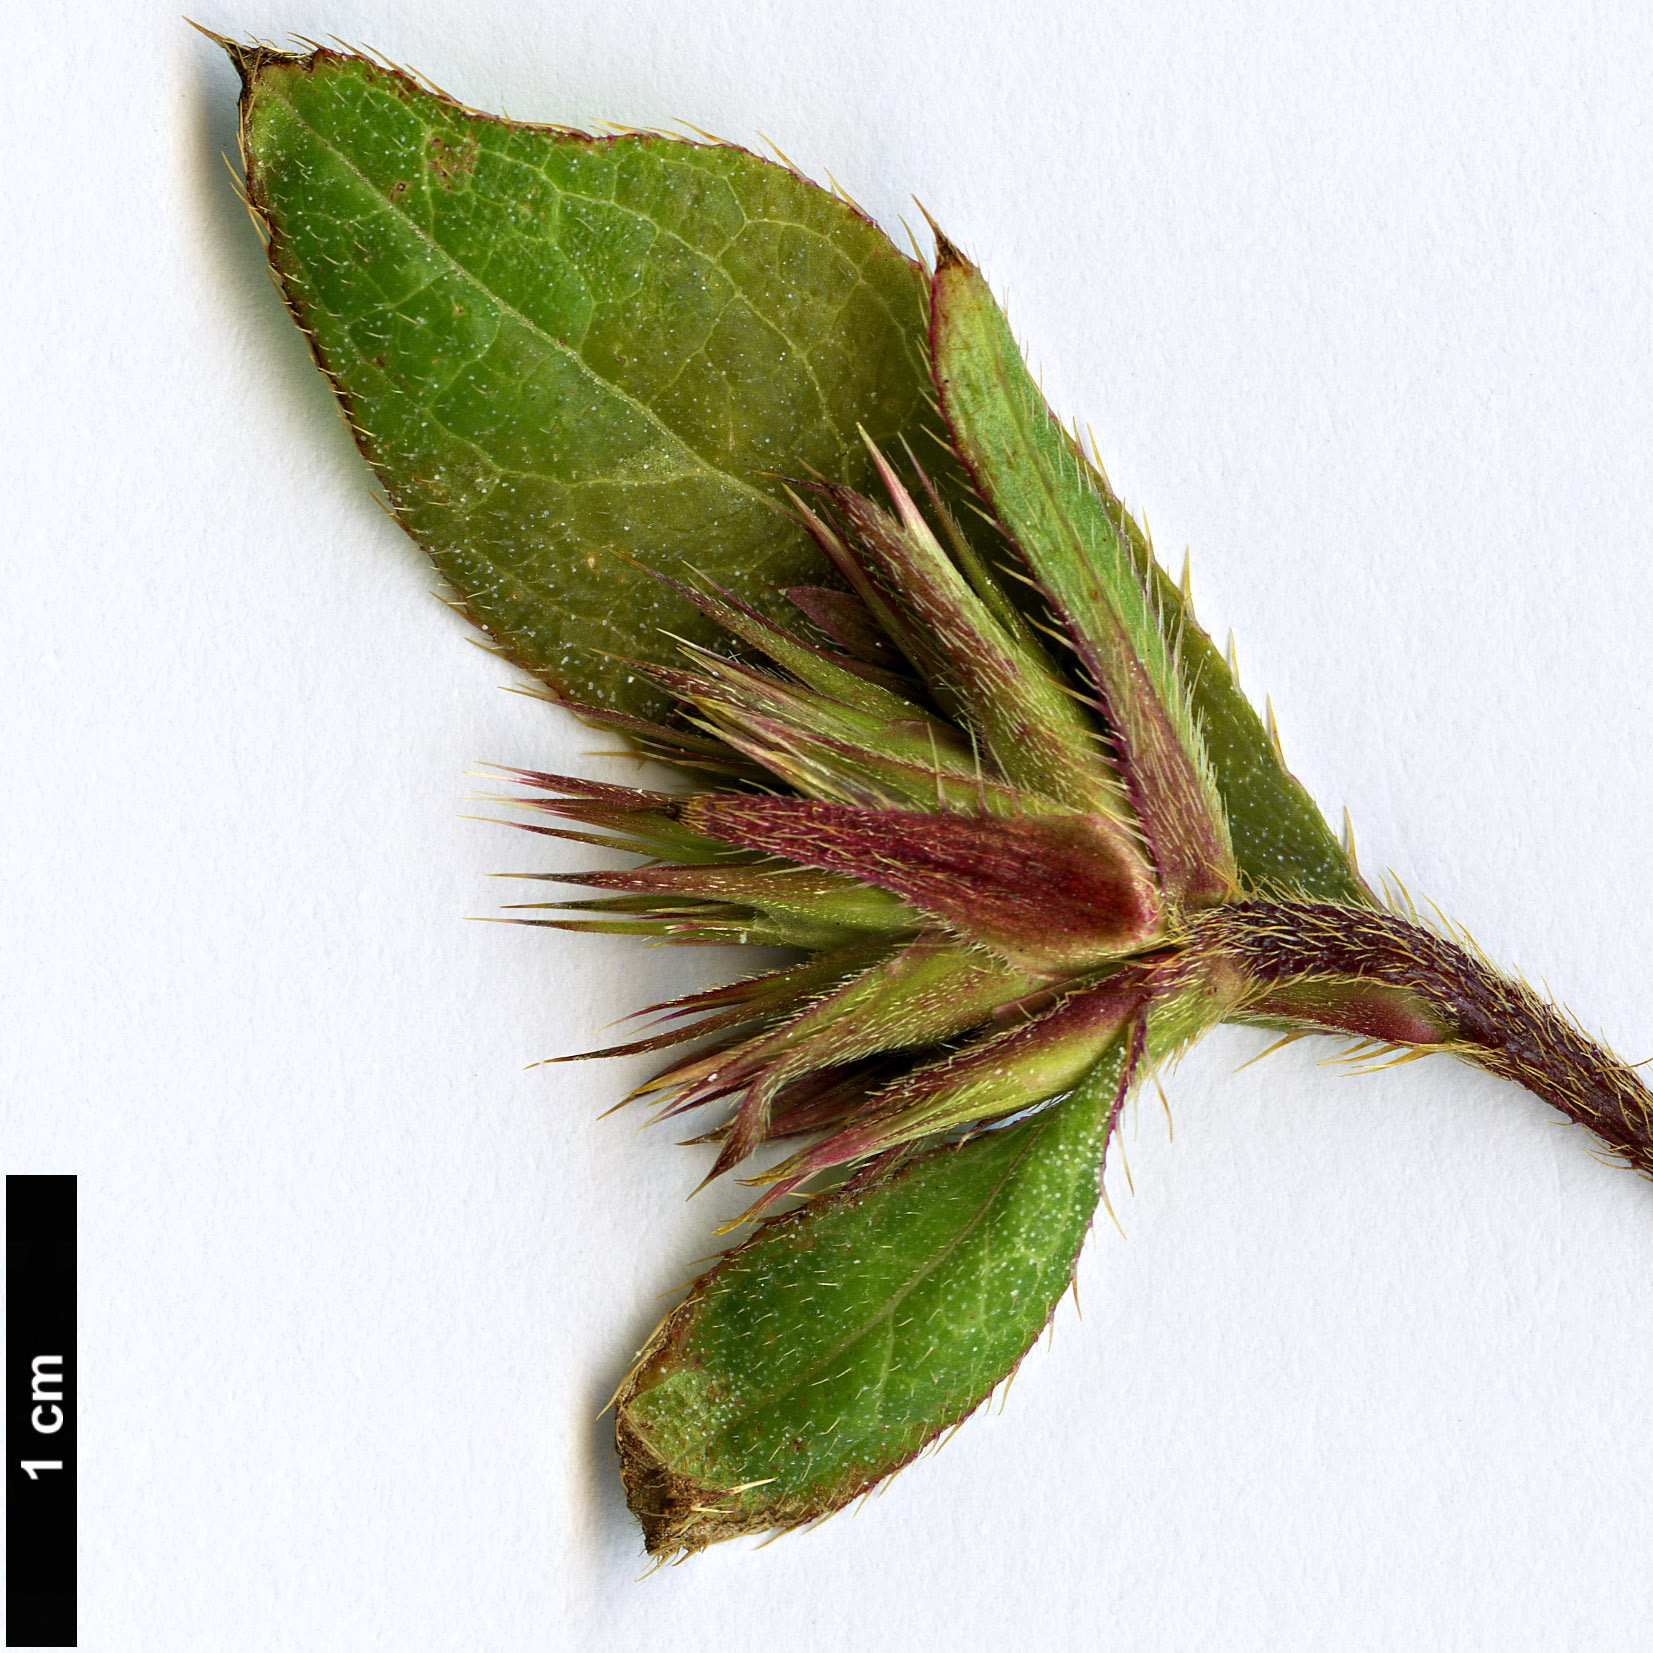 High resolution image: Family: Plumbaginaceae - Genus: Ceratostigma - Taxon: willmottianum